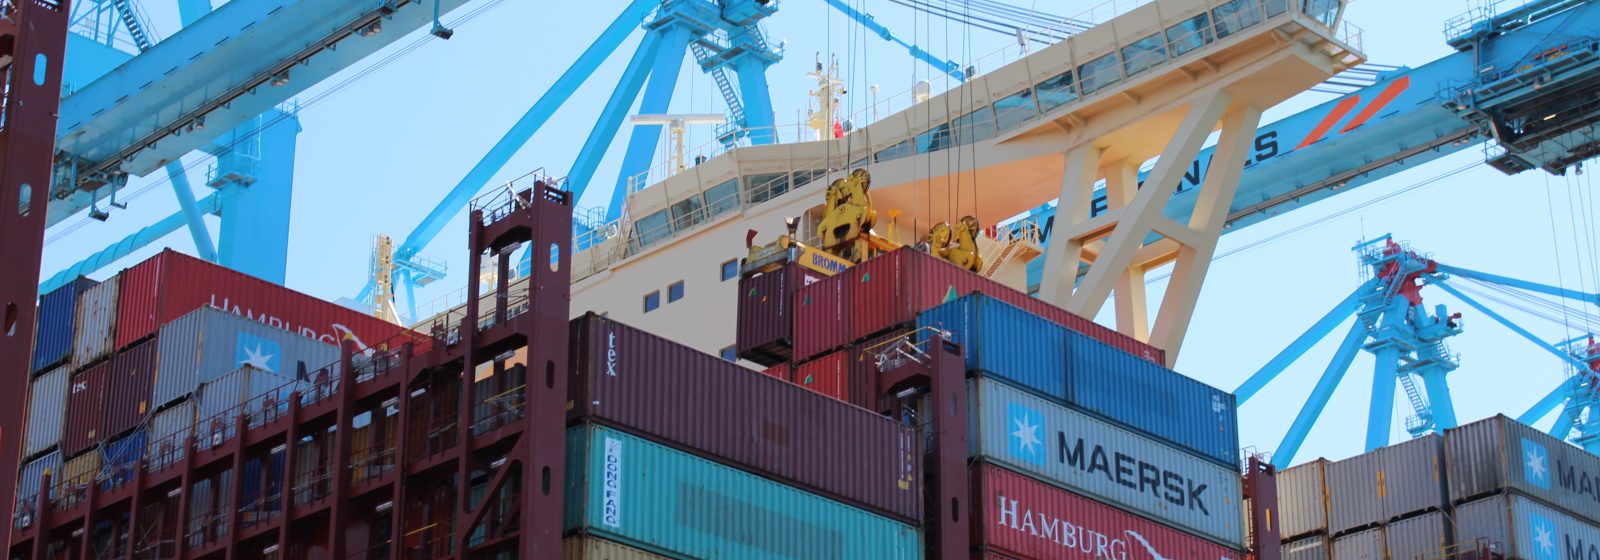 De containeroverslag in Rotterdam daalde met 3,2% in teu